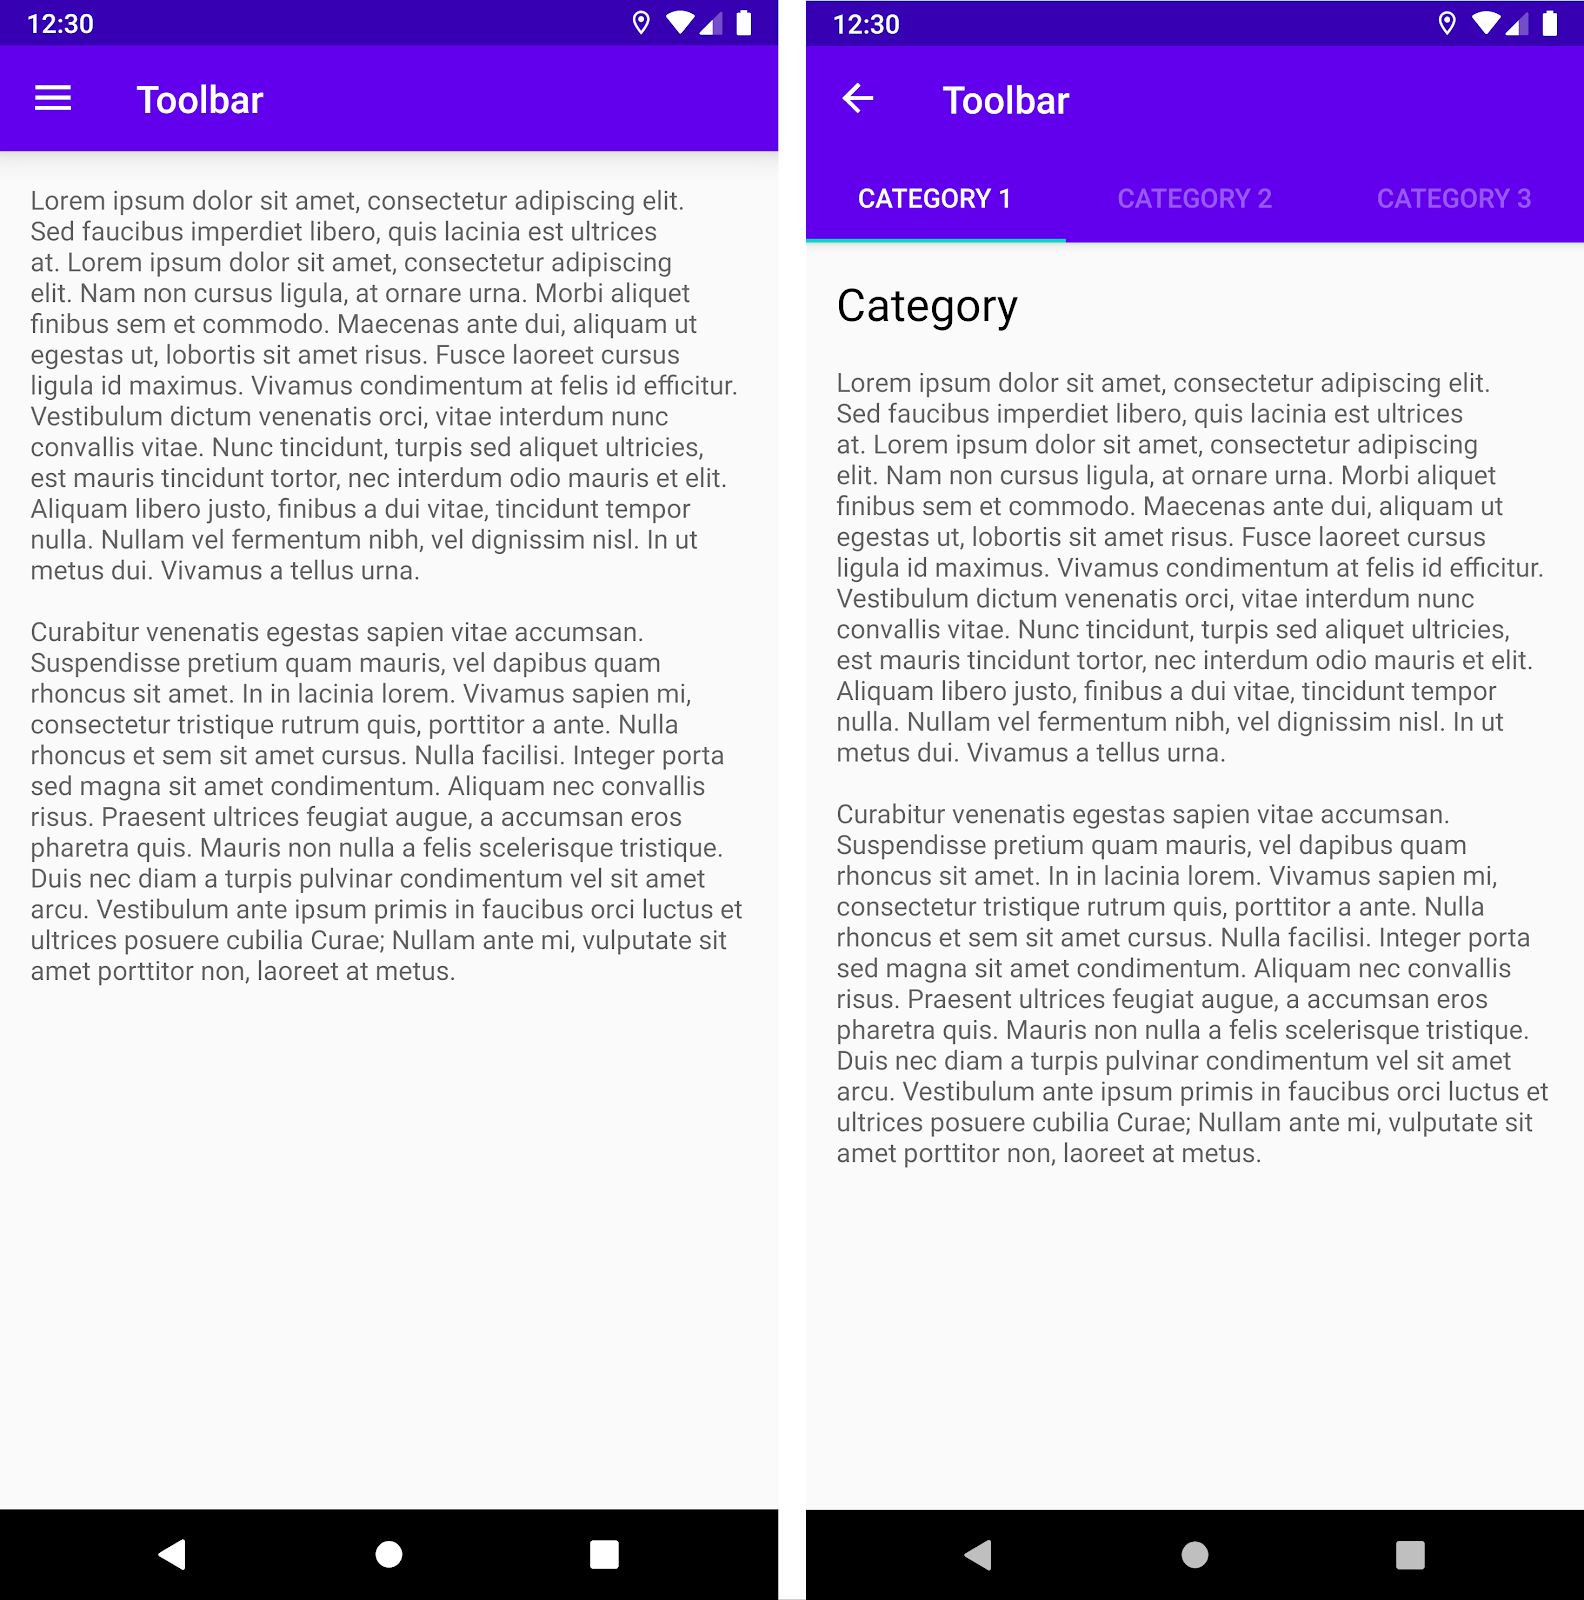 두 가지 상단 앱 바 변형: 표준 툴바(왼쪽) 및 툴바와 탭이 있는 AppBarLayout(오른쪽)